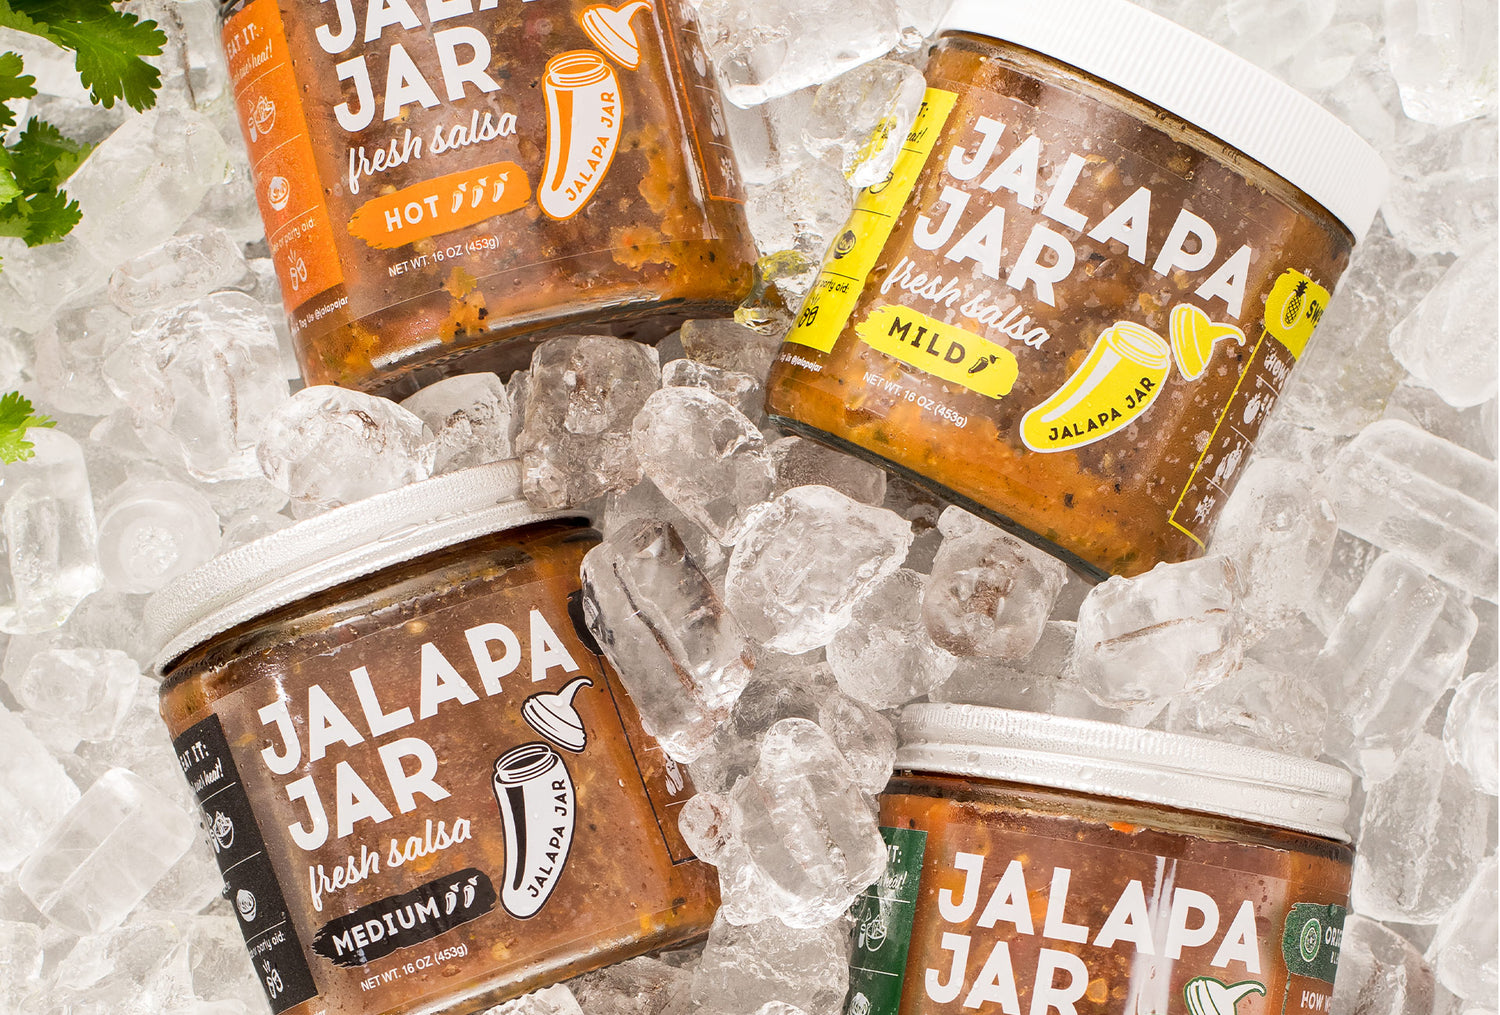 Find Jalapa Jar fresh salsa near you.